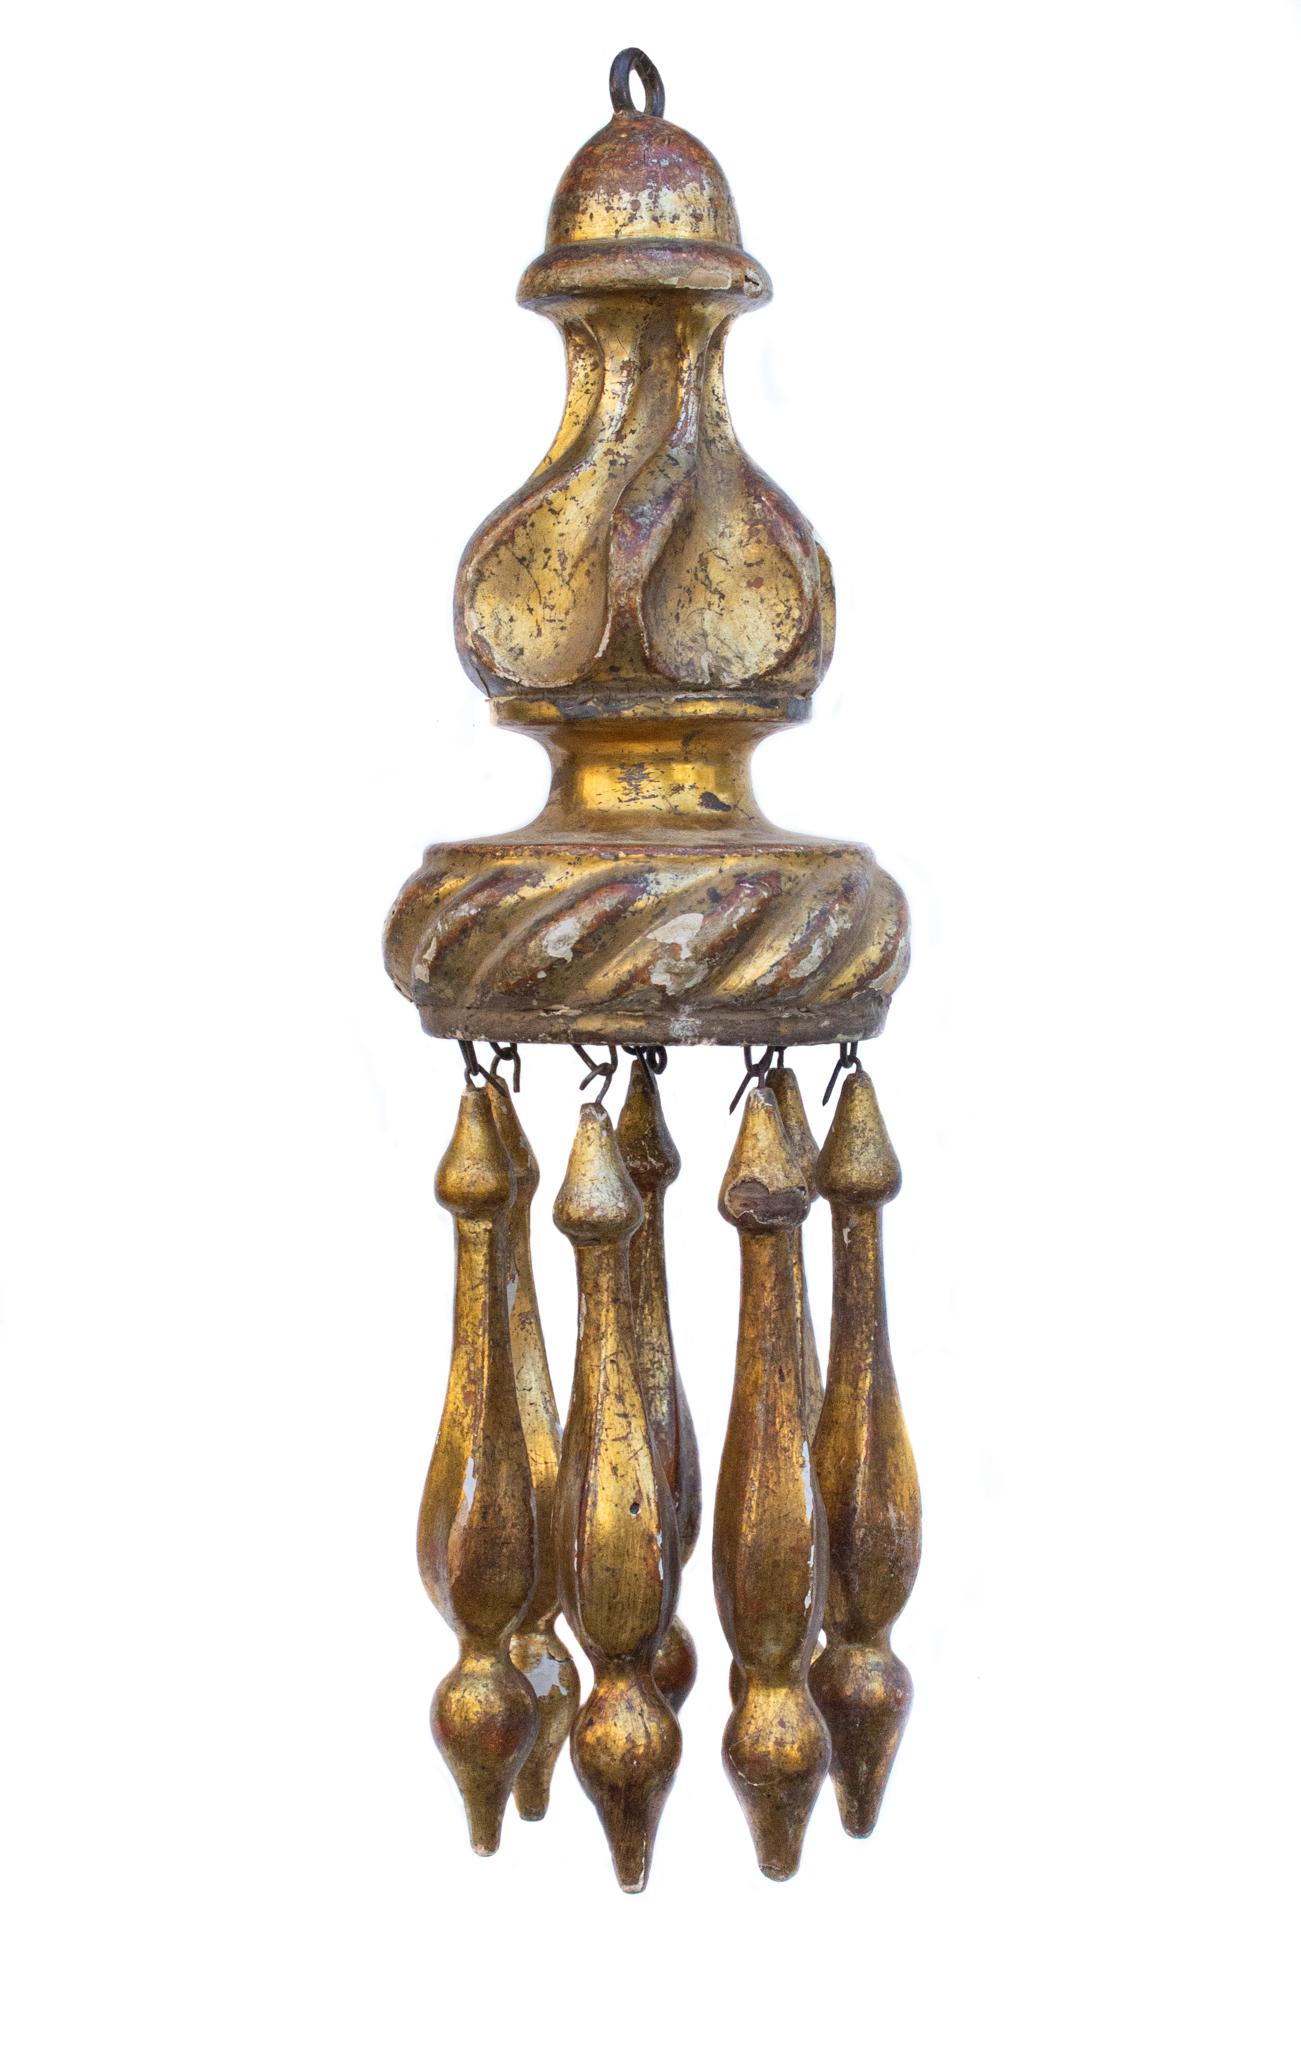 Paar italienische handgeschnitzte Blattgoldquasten aus dem 18. Jahrhundert. Der Quastenpompon stammt ursprünglich aus einer italienischen Kirche in der Toskana und wurde zur Verzierung von kirchlichen Beleuchtungselementen und anderen